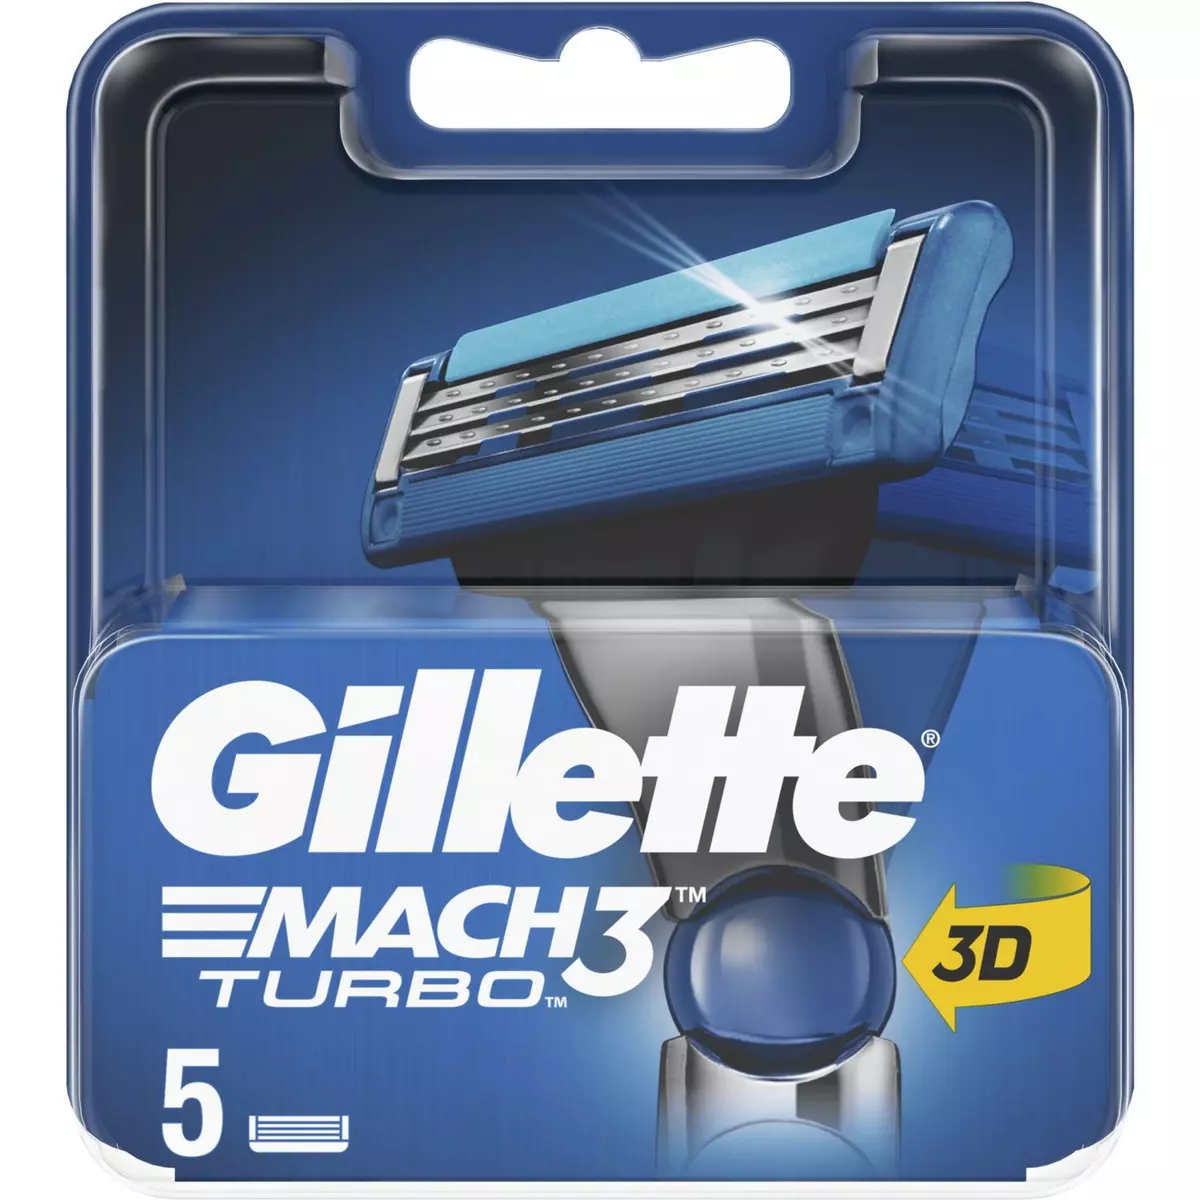 GILLETTE Mach 3 Turbo recharge lames de rasoir 5 recharges